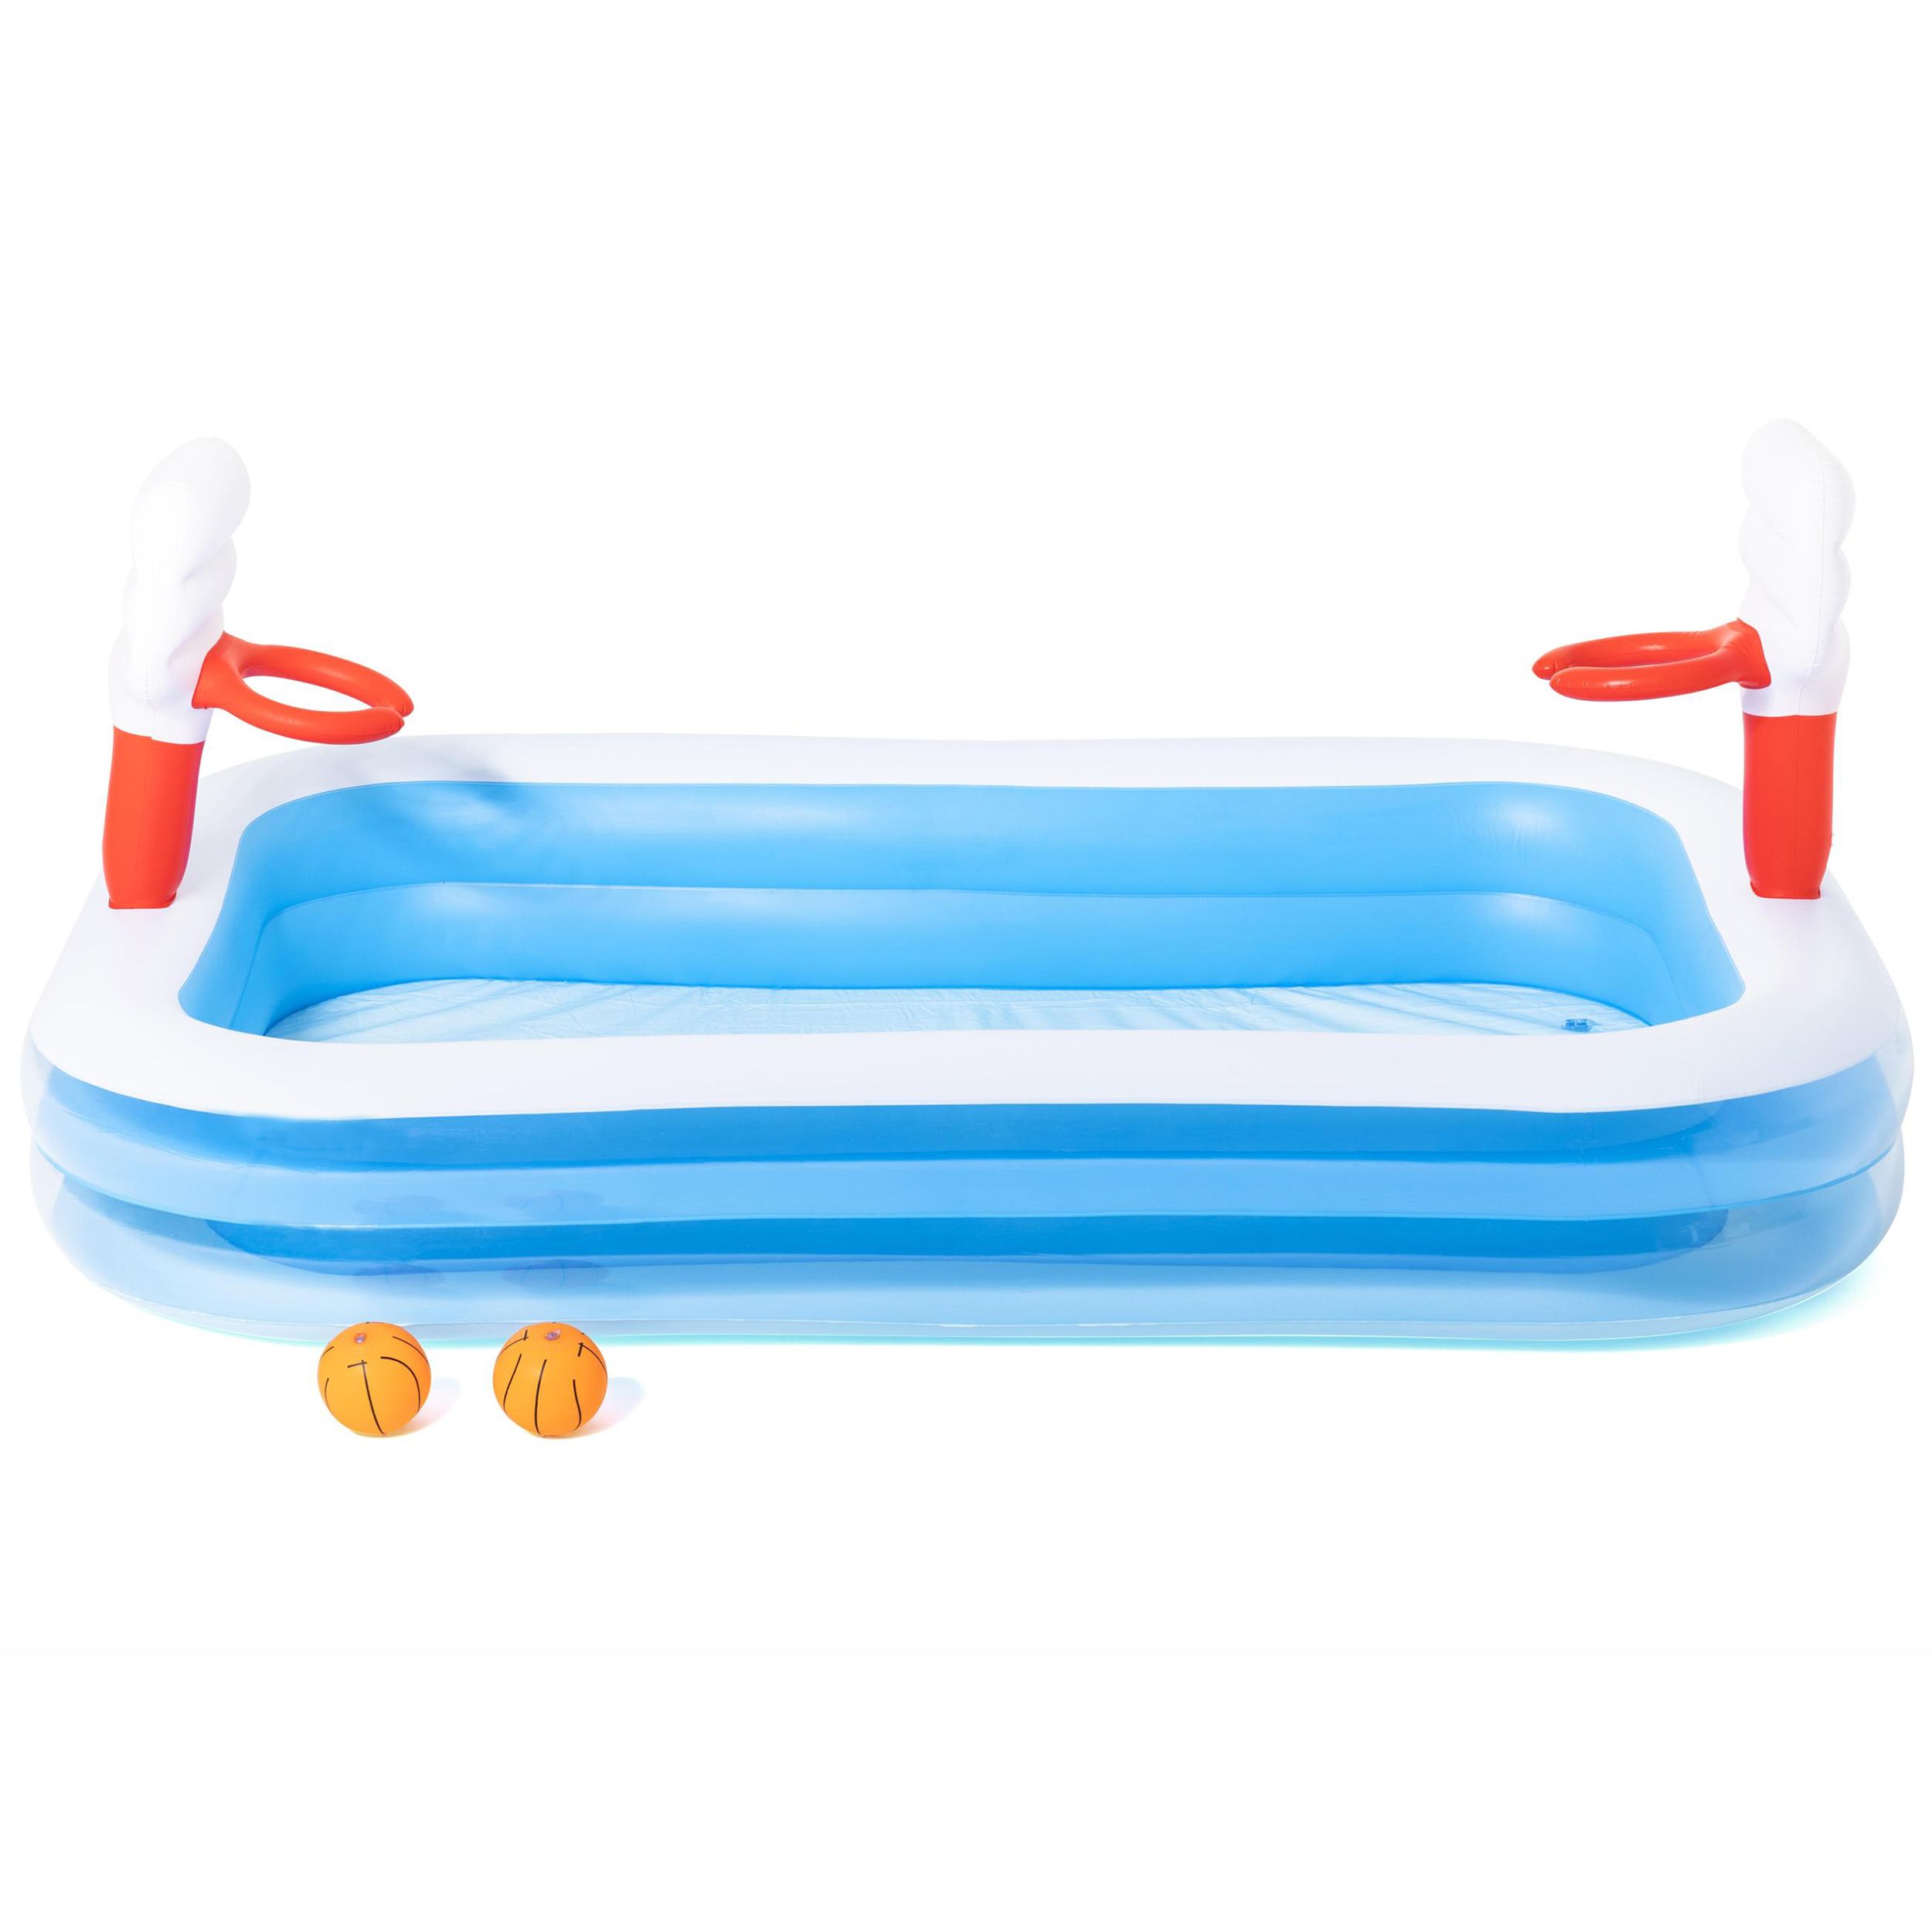 Bestway Plain PVC Family fun pool (W) 1.68m x (L) 2.51m